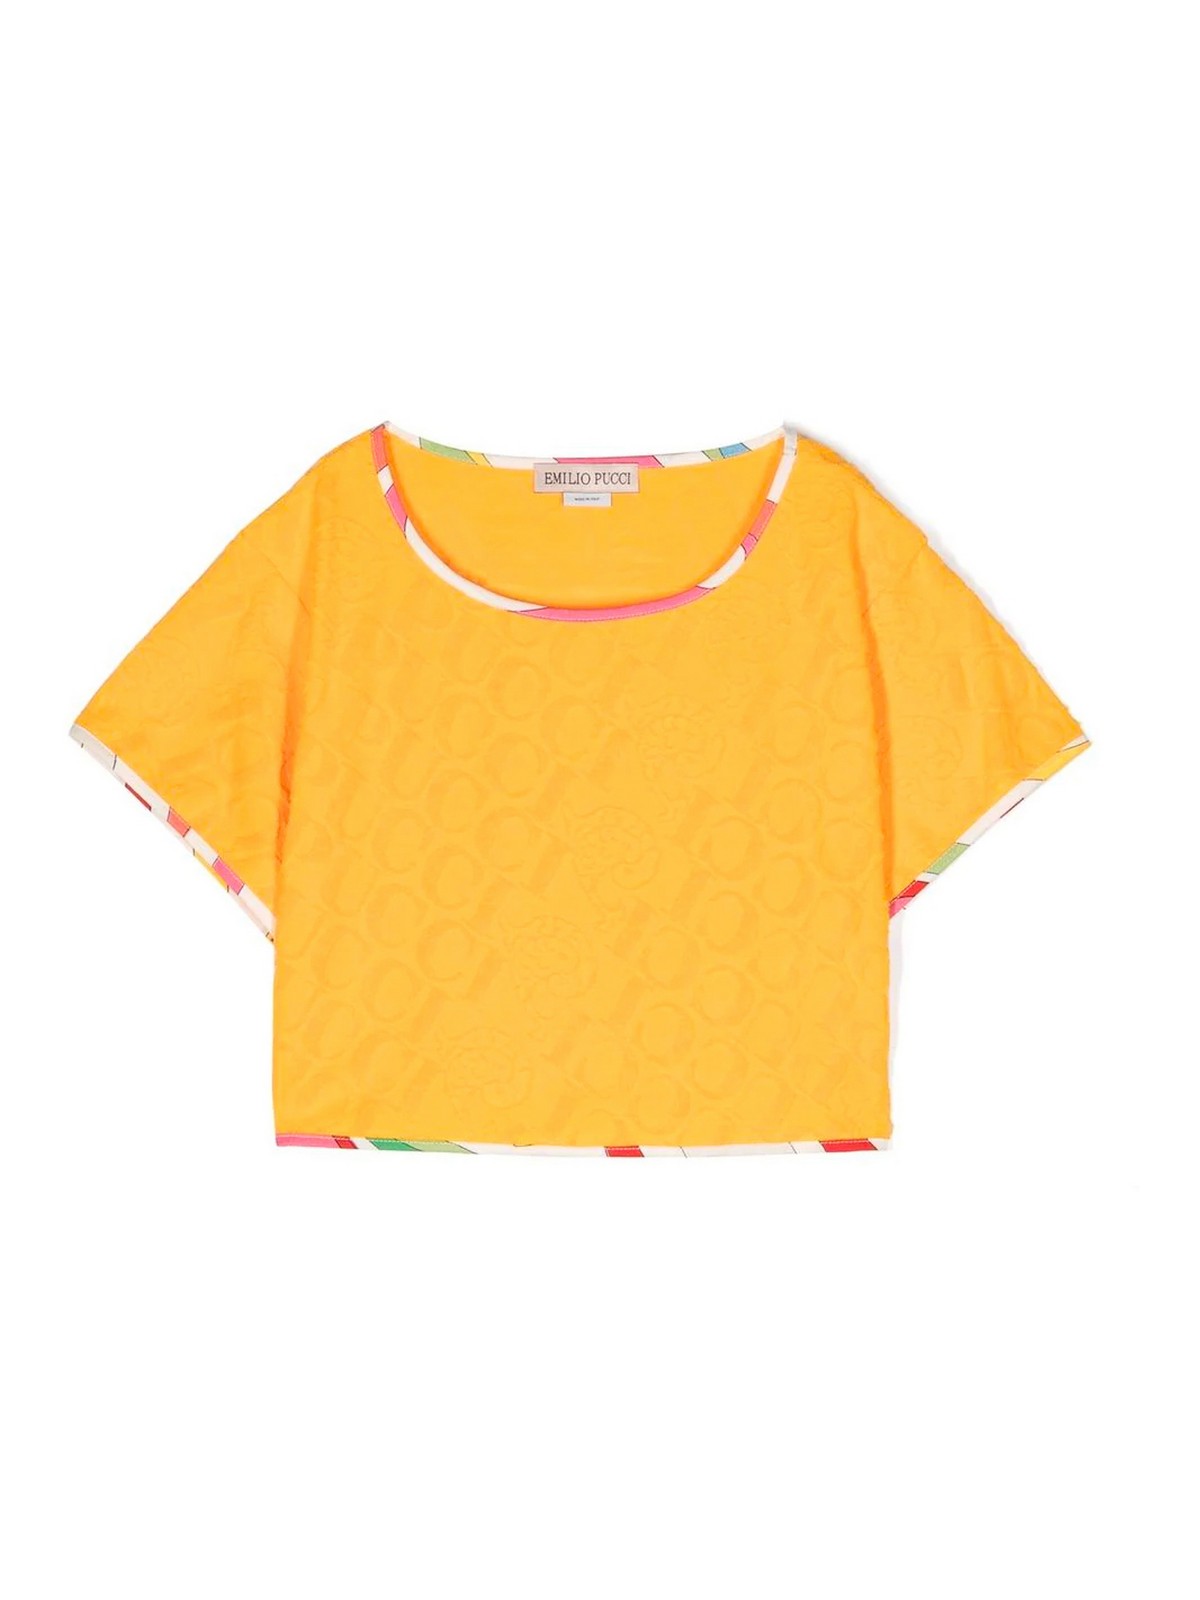 Emilio Pucci Kids' T-shirt In Orange